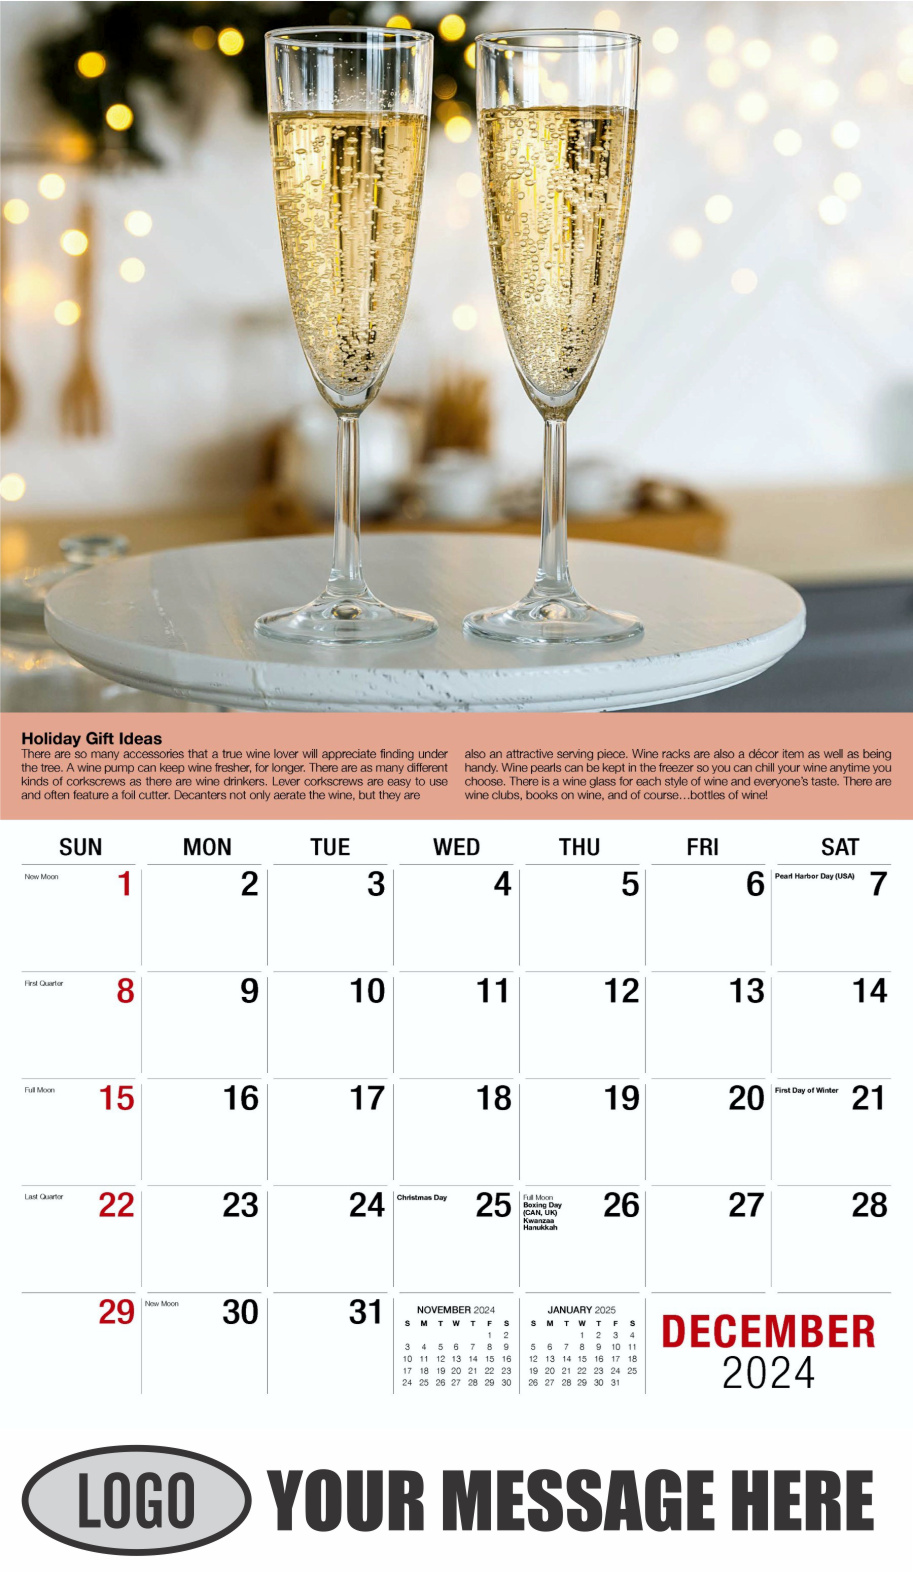 Vintages - Wine Tips 2024 Business Promo Calendar - December